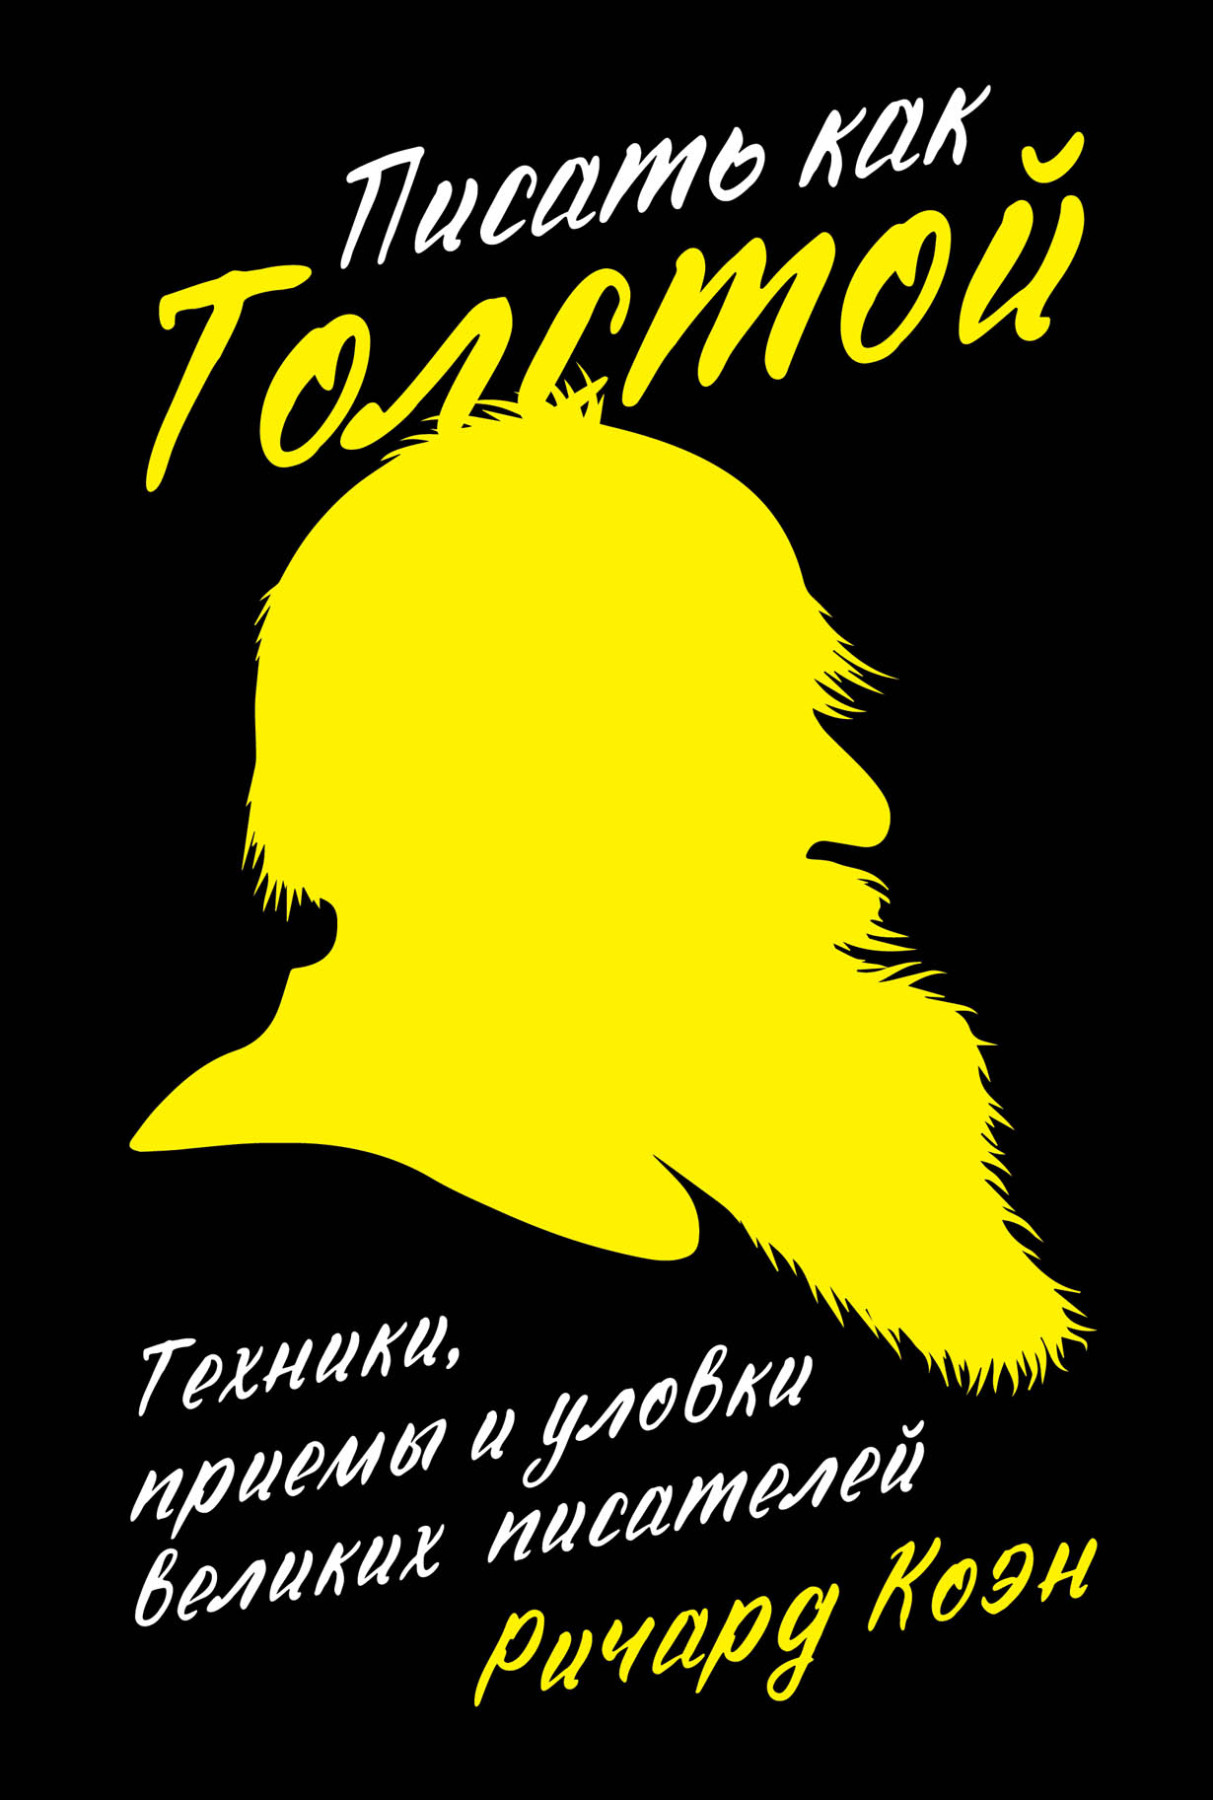 Писать как Толстой обложка.